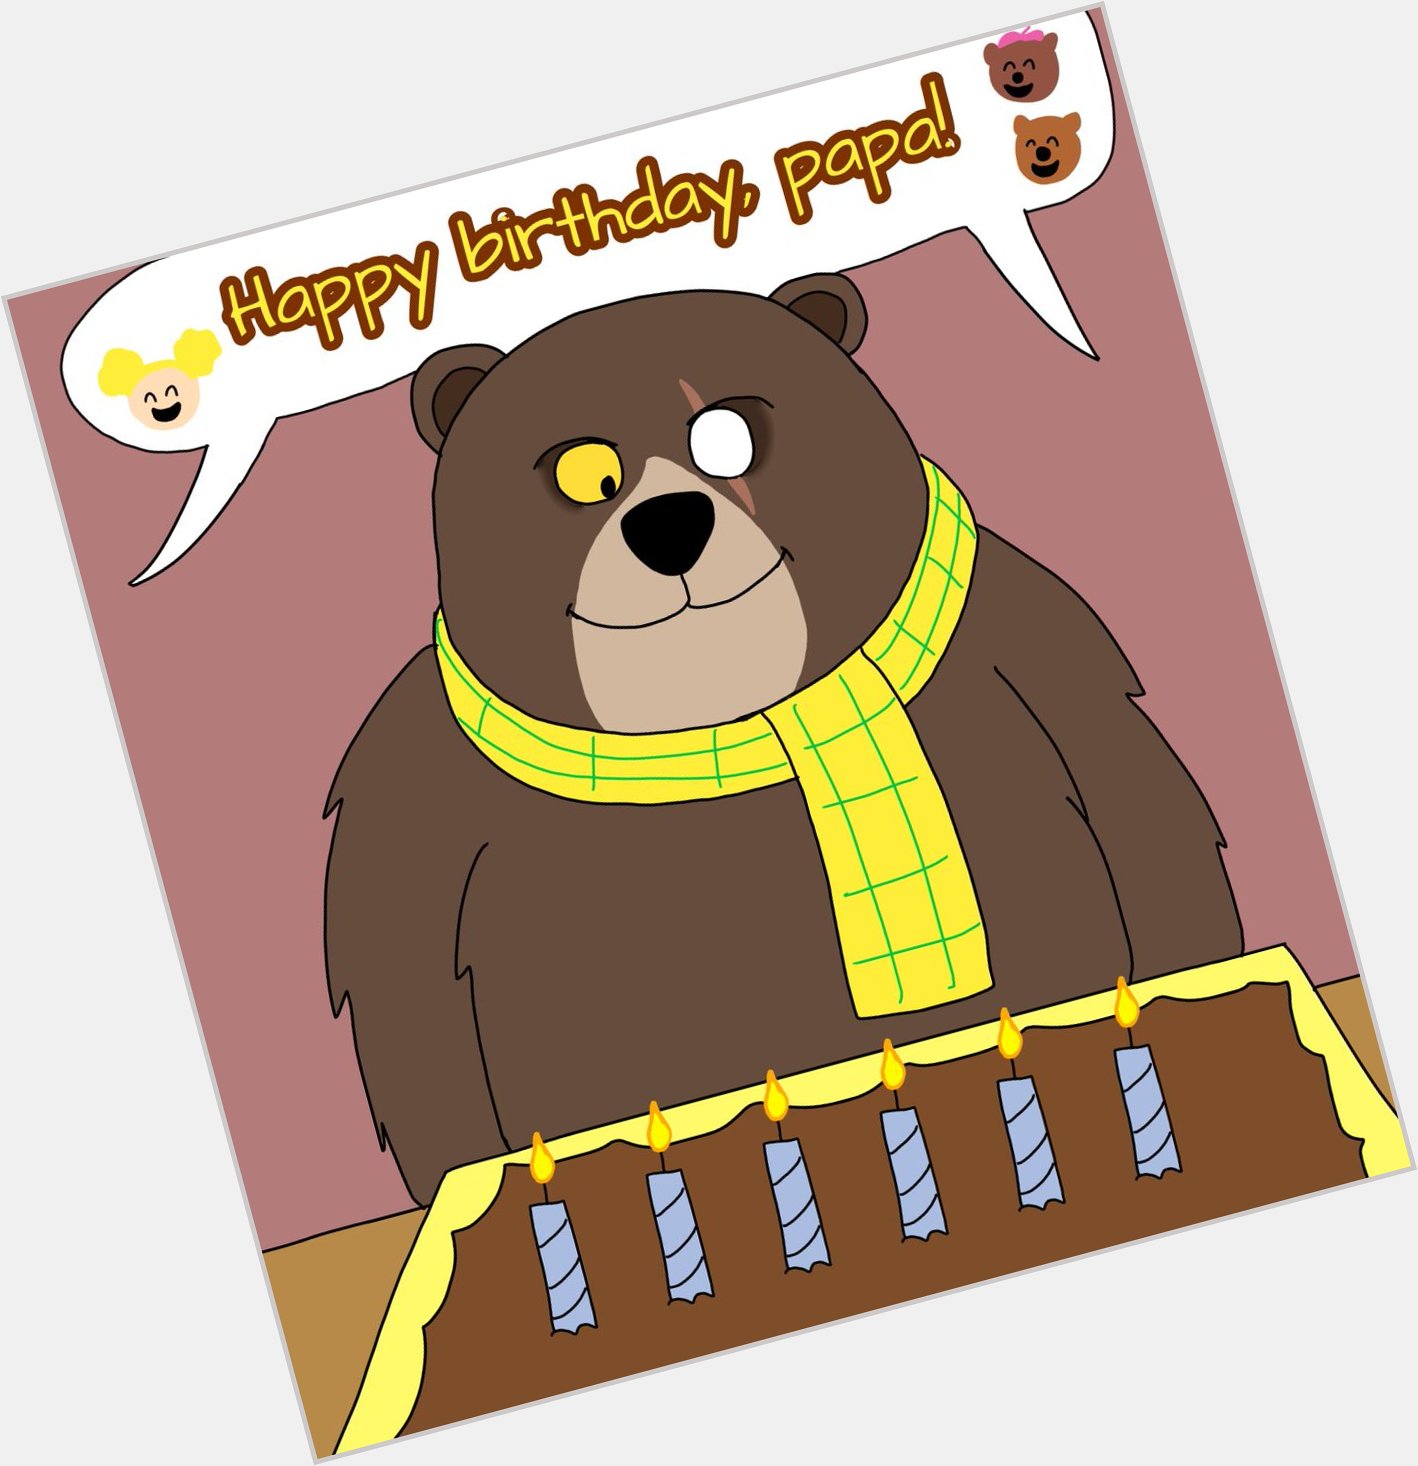 Happy birthday to ray winstone, the voice of papa bear!      